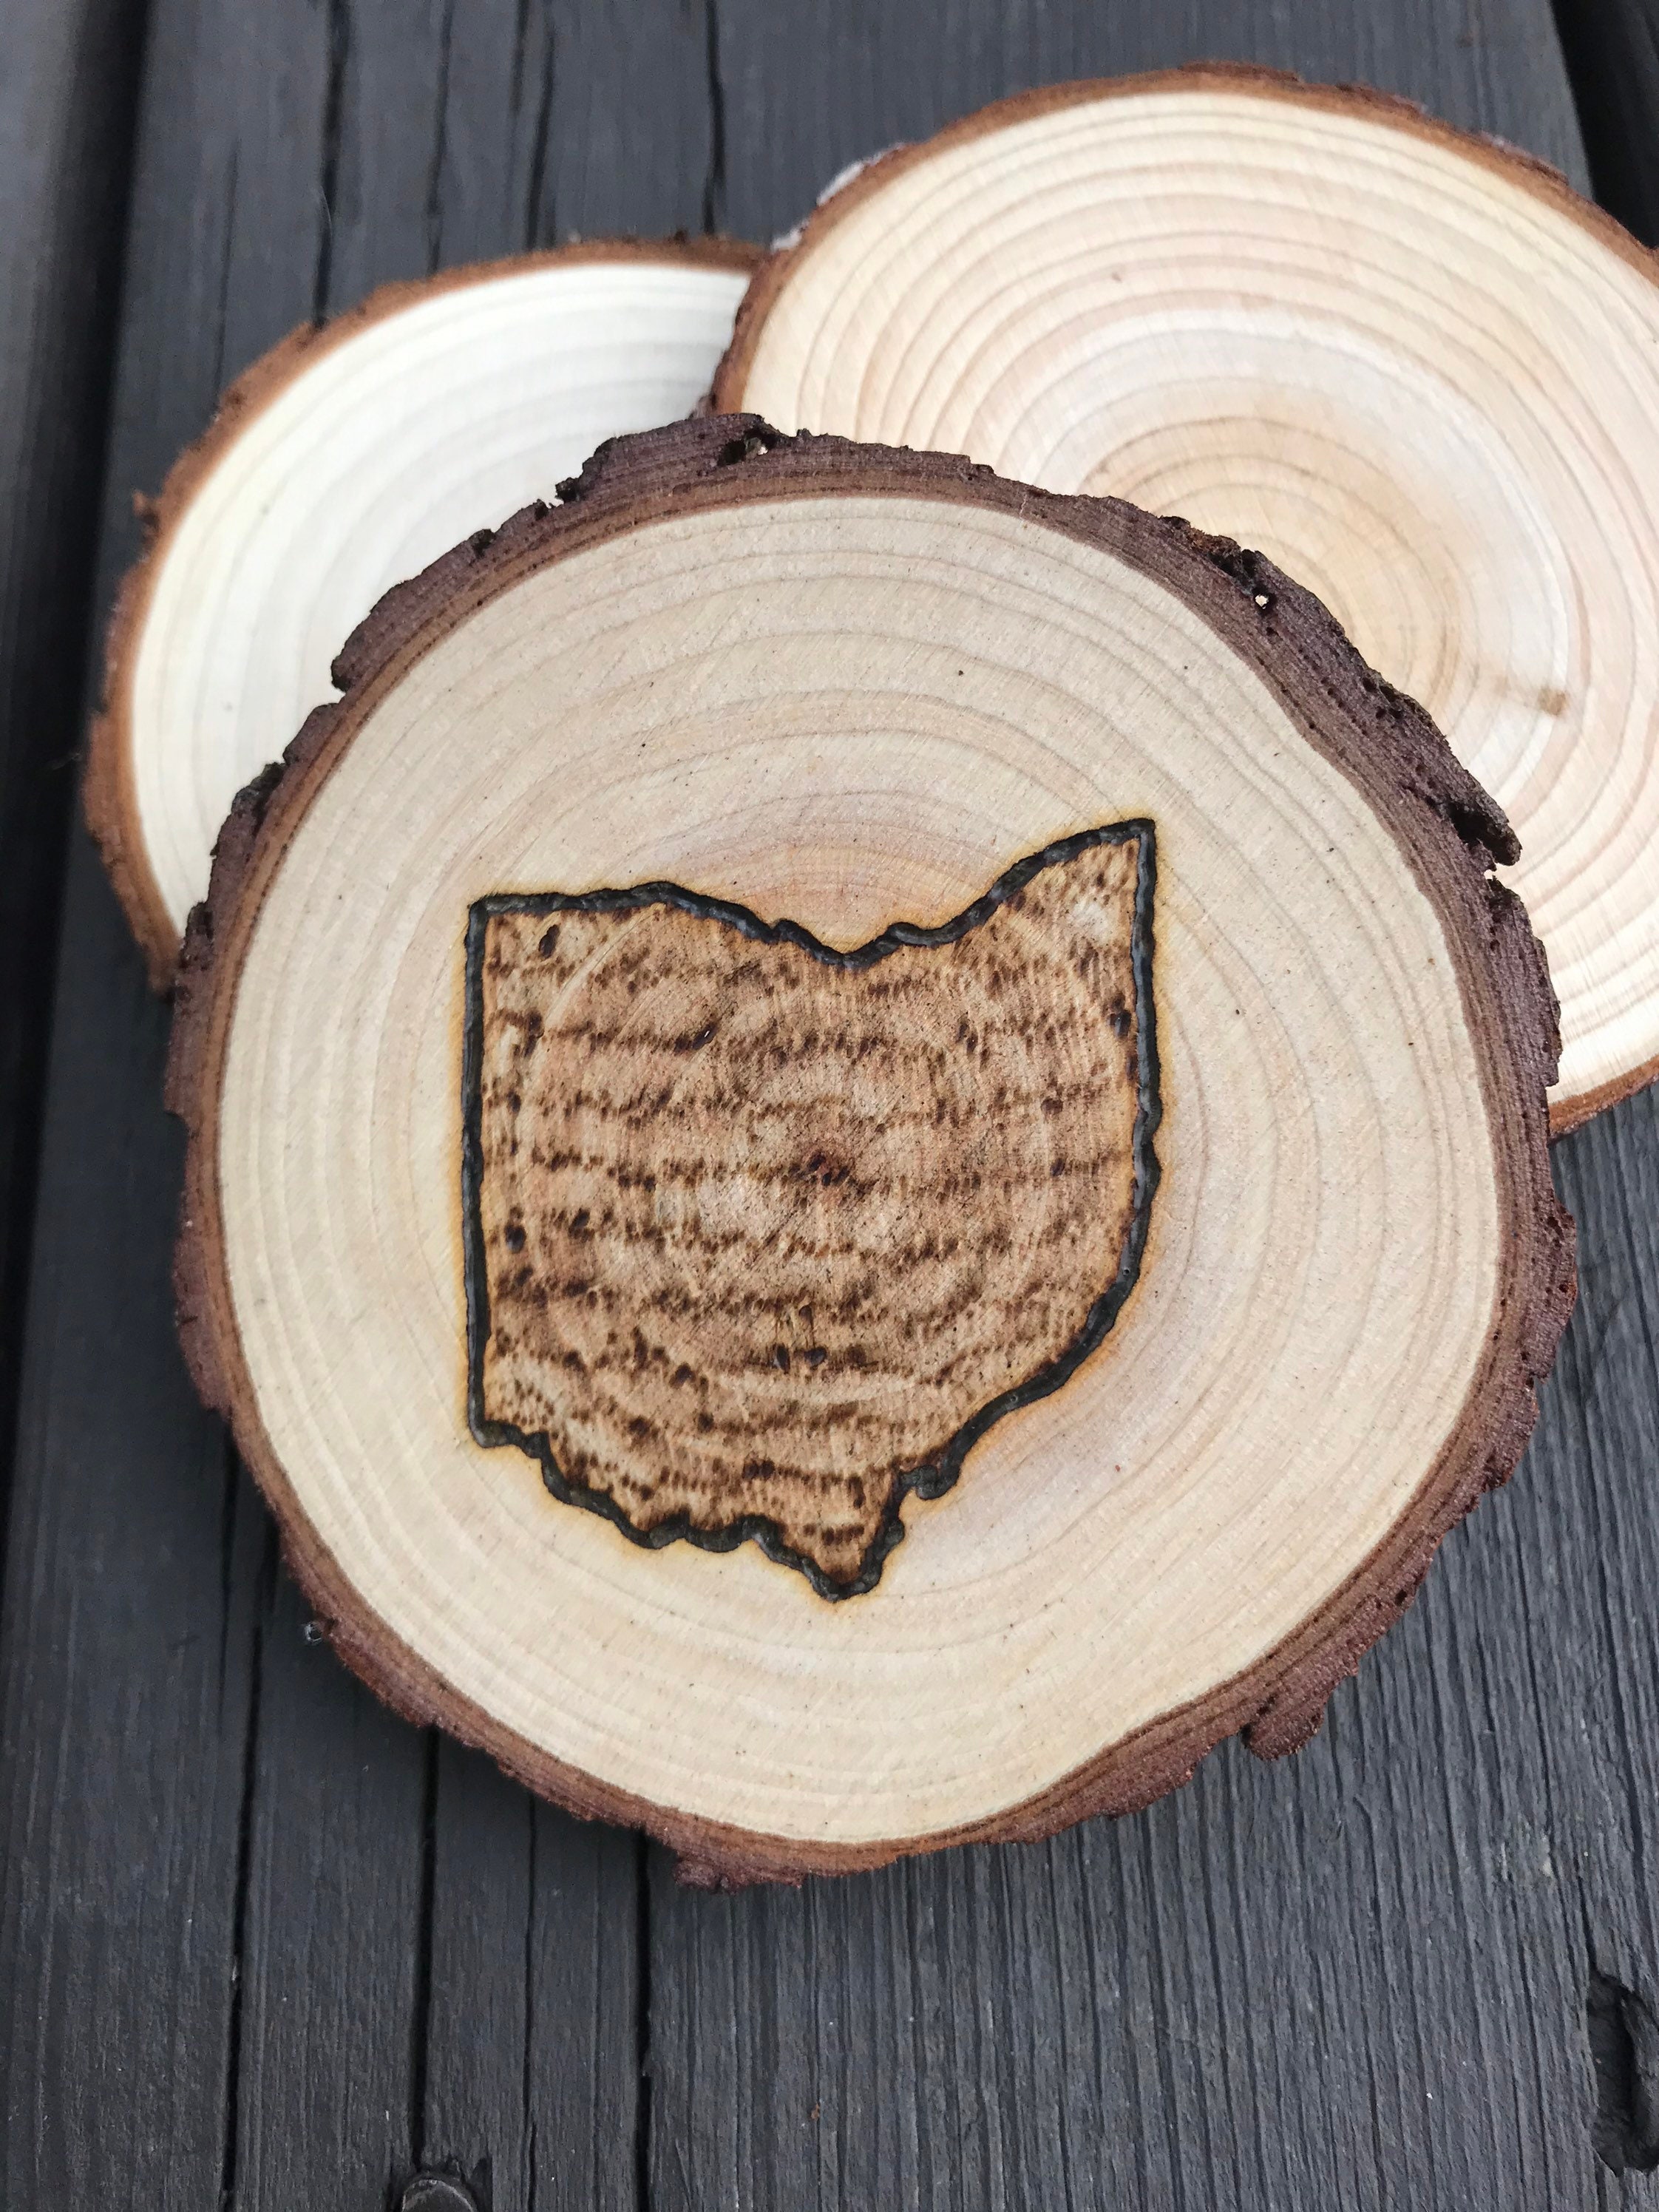 DIY Tutorial: Wood Branch Slice Monogrammed Coasters  Wood burning crafts, Wood  coasters, Monogram coasters